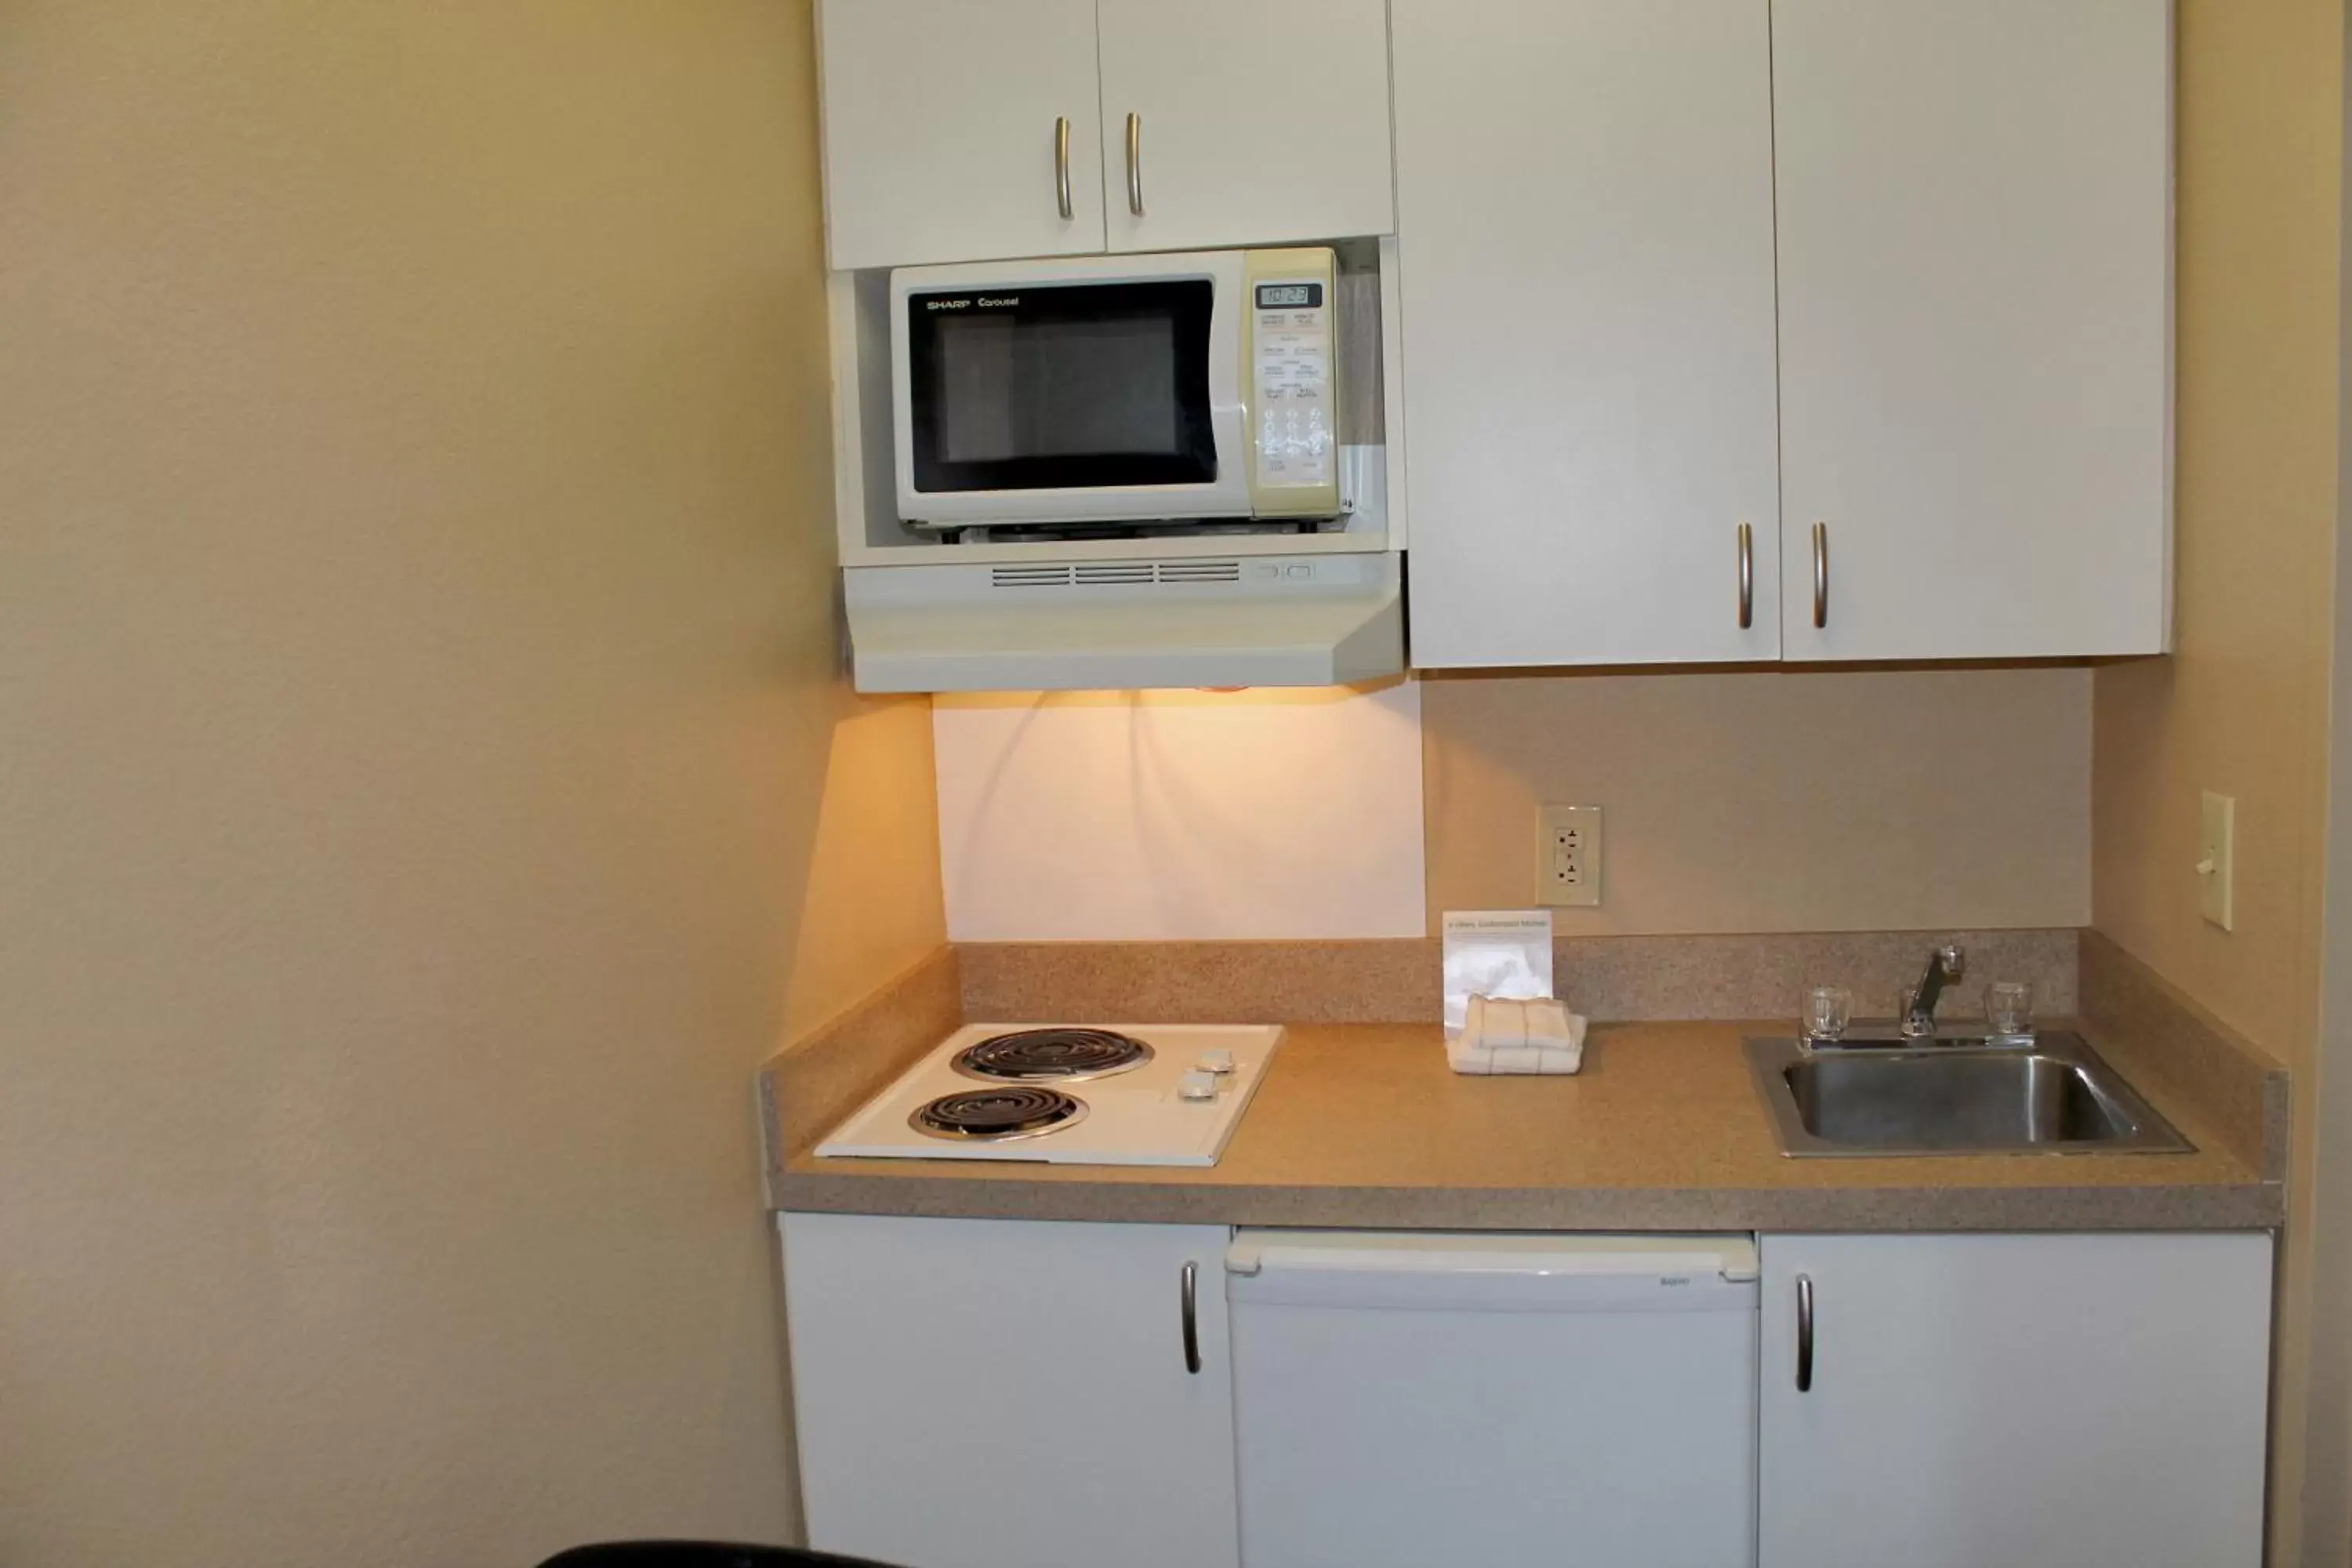 Kitchen or kitchenette, Kitchen/Kitchenette in Extended Stay America Suites - Albuquerque - Airport